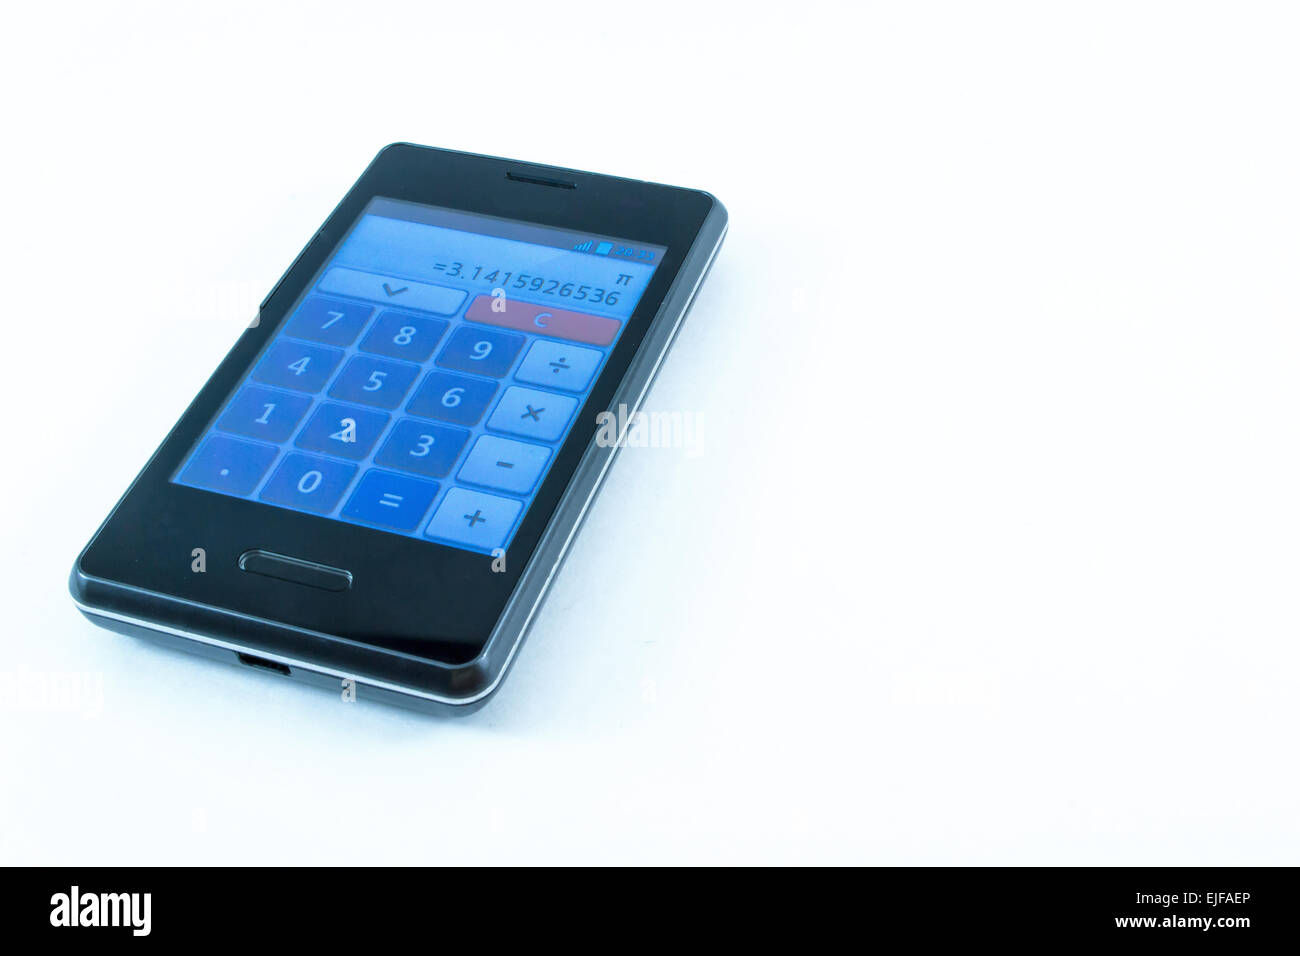 Un mobile smart phone visualizza il simbolo di Pi 3.14 sulla sua calcolatrice - isolato su sfondo bianco Foto Stock